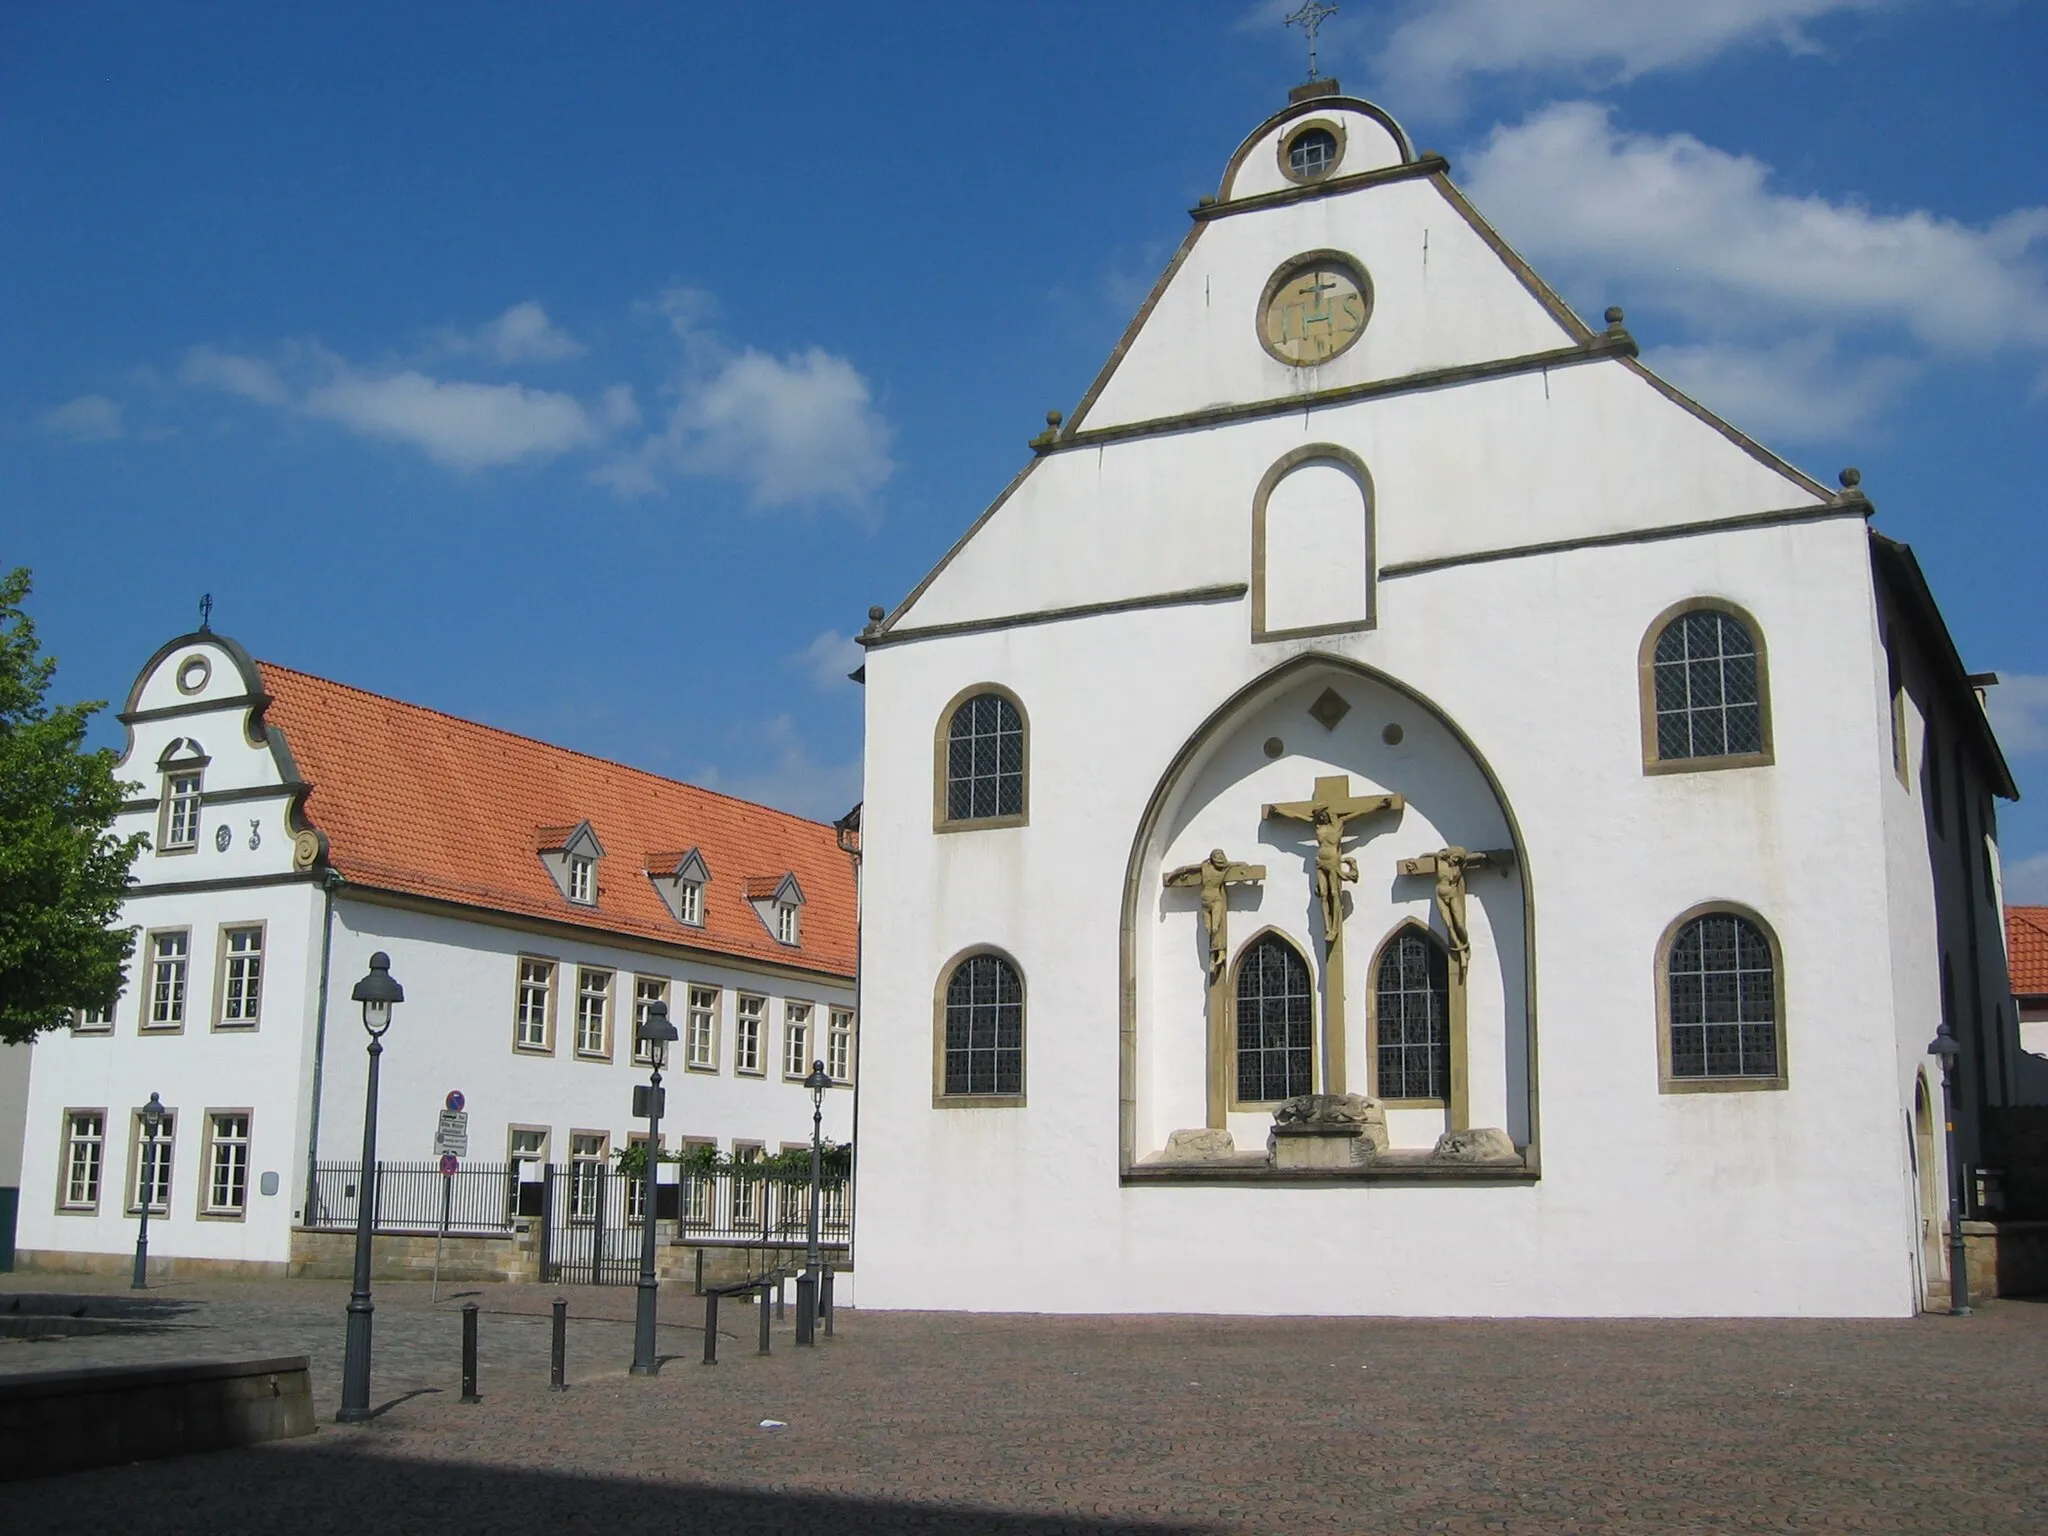 Image of Osnabrück